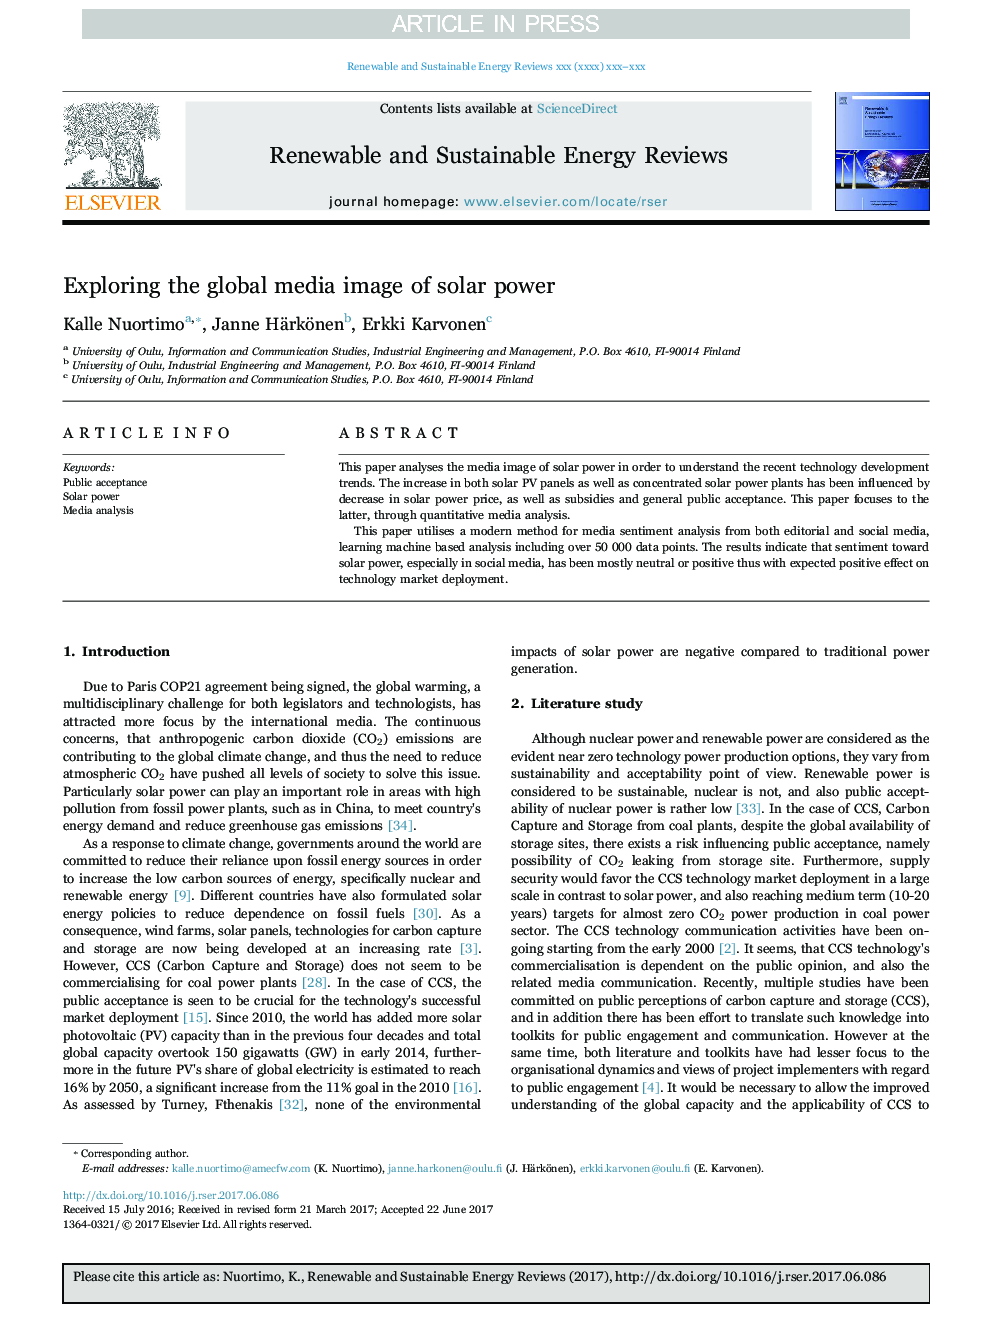 بررسی تصویر رسانه های جهانی انرژی خورشیدی 